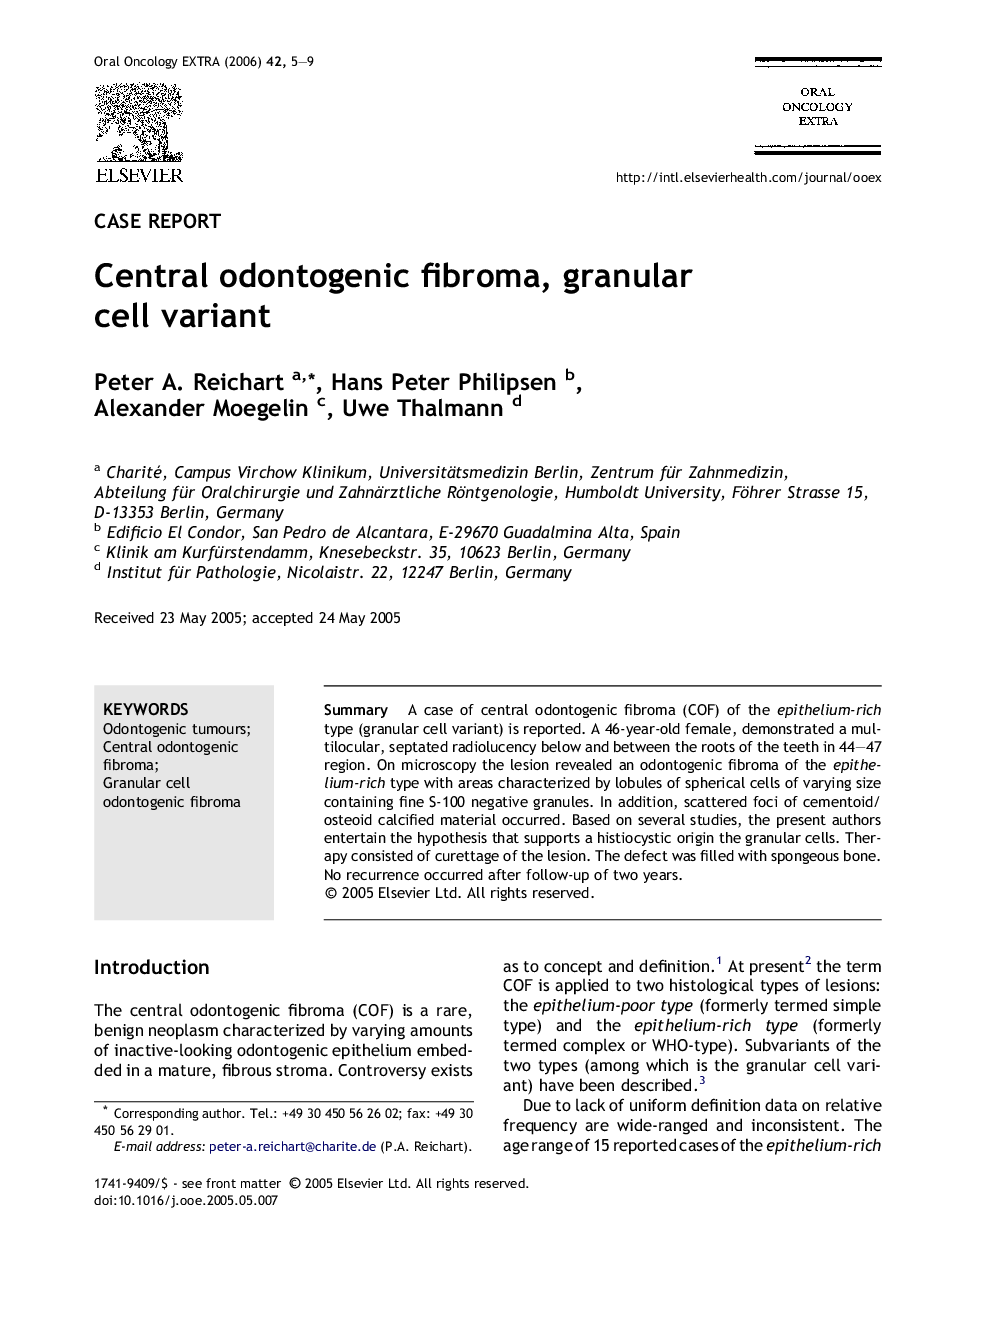 Central odontogenic fibroma, granular cell variant